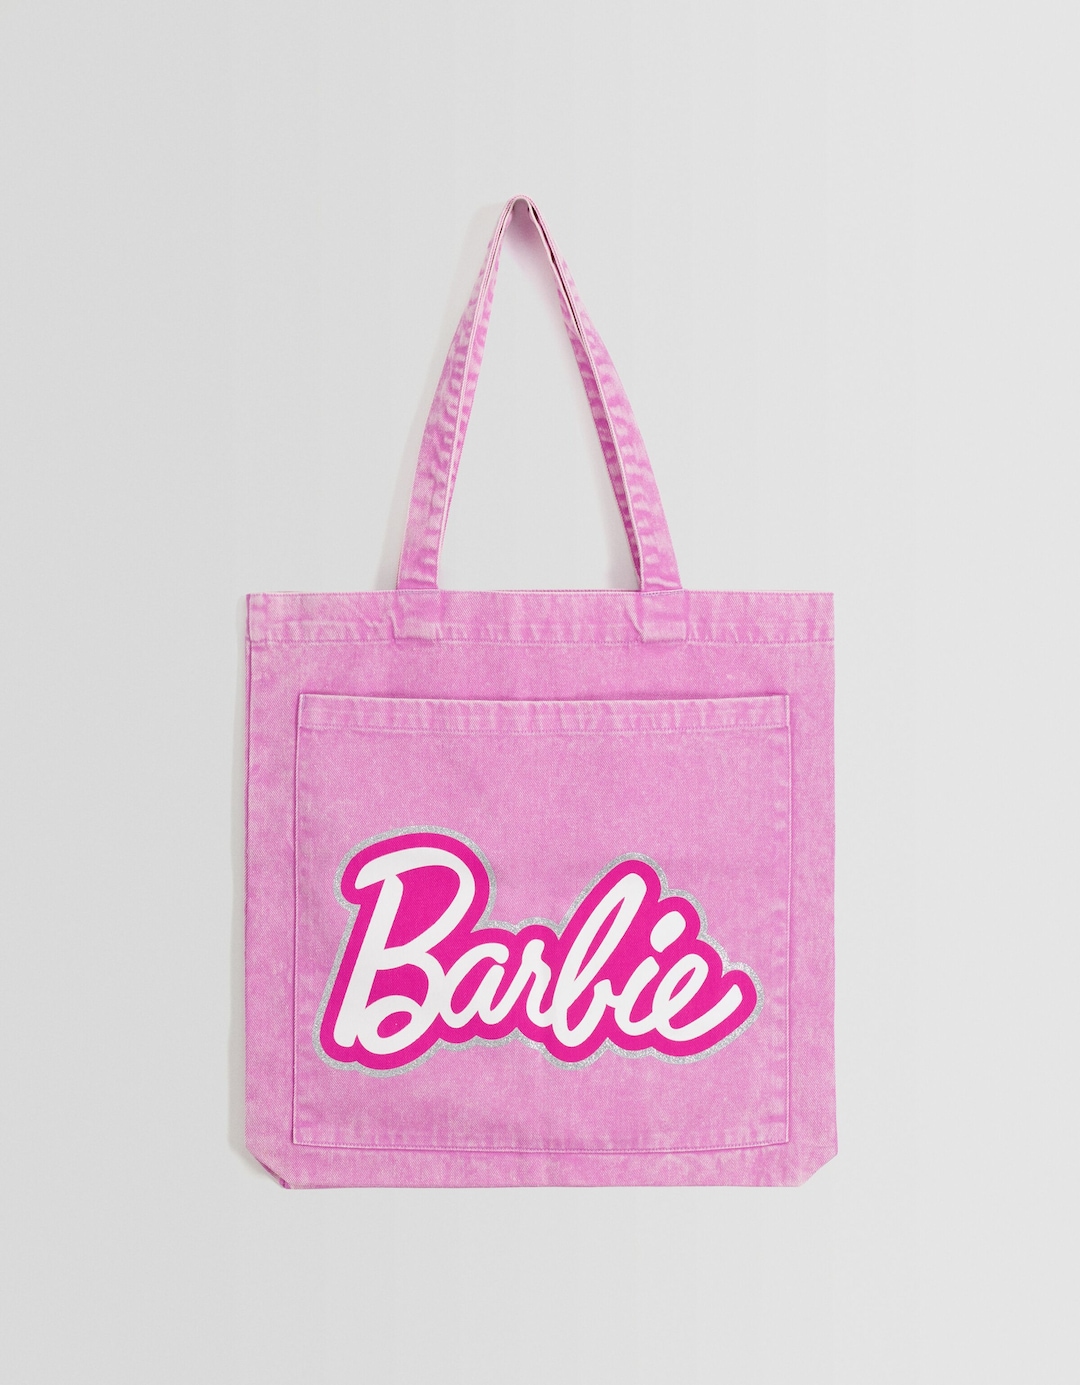 Barbie shopper bag